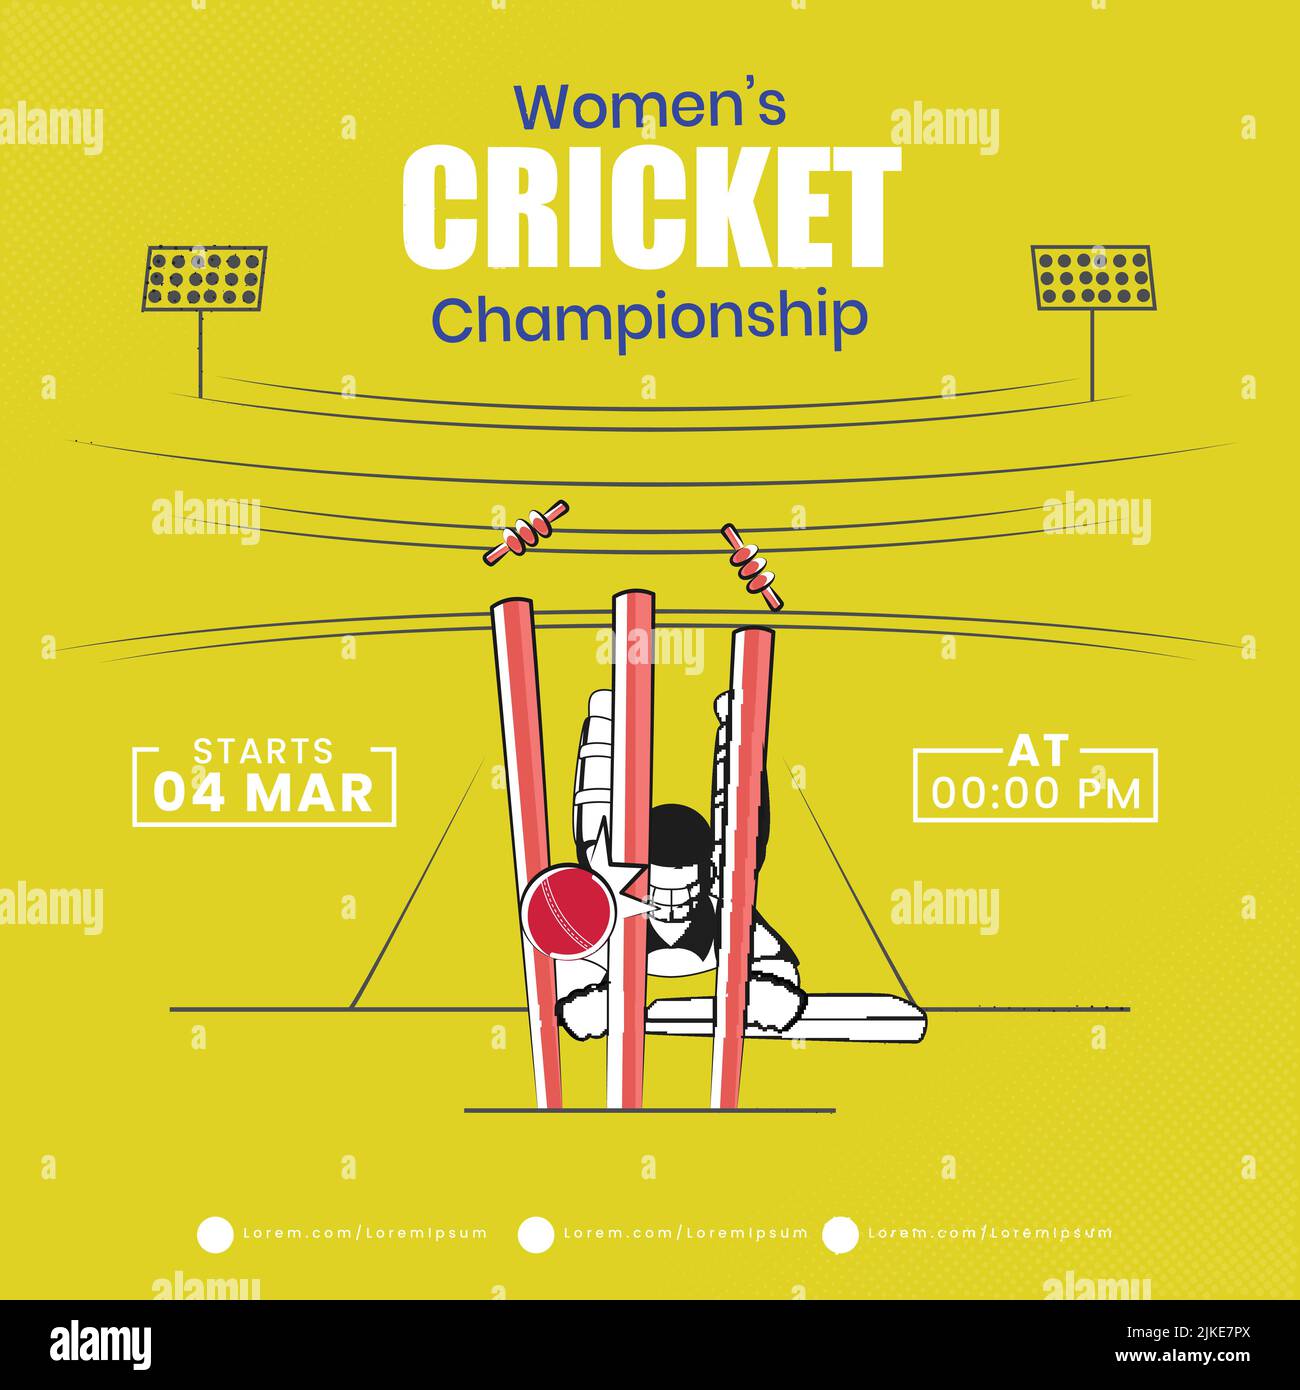 Konzept des Run Out Batter Players auf gelbem Hintergrund für die Cricket-Meisterschaft der Frauen. Stock Vektor